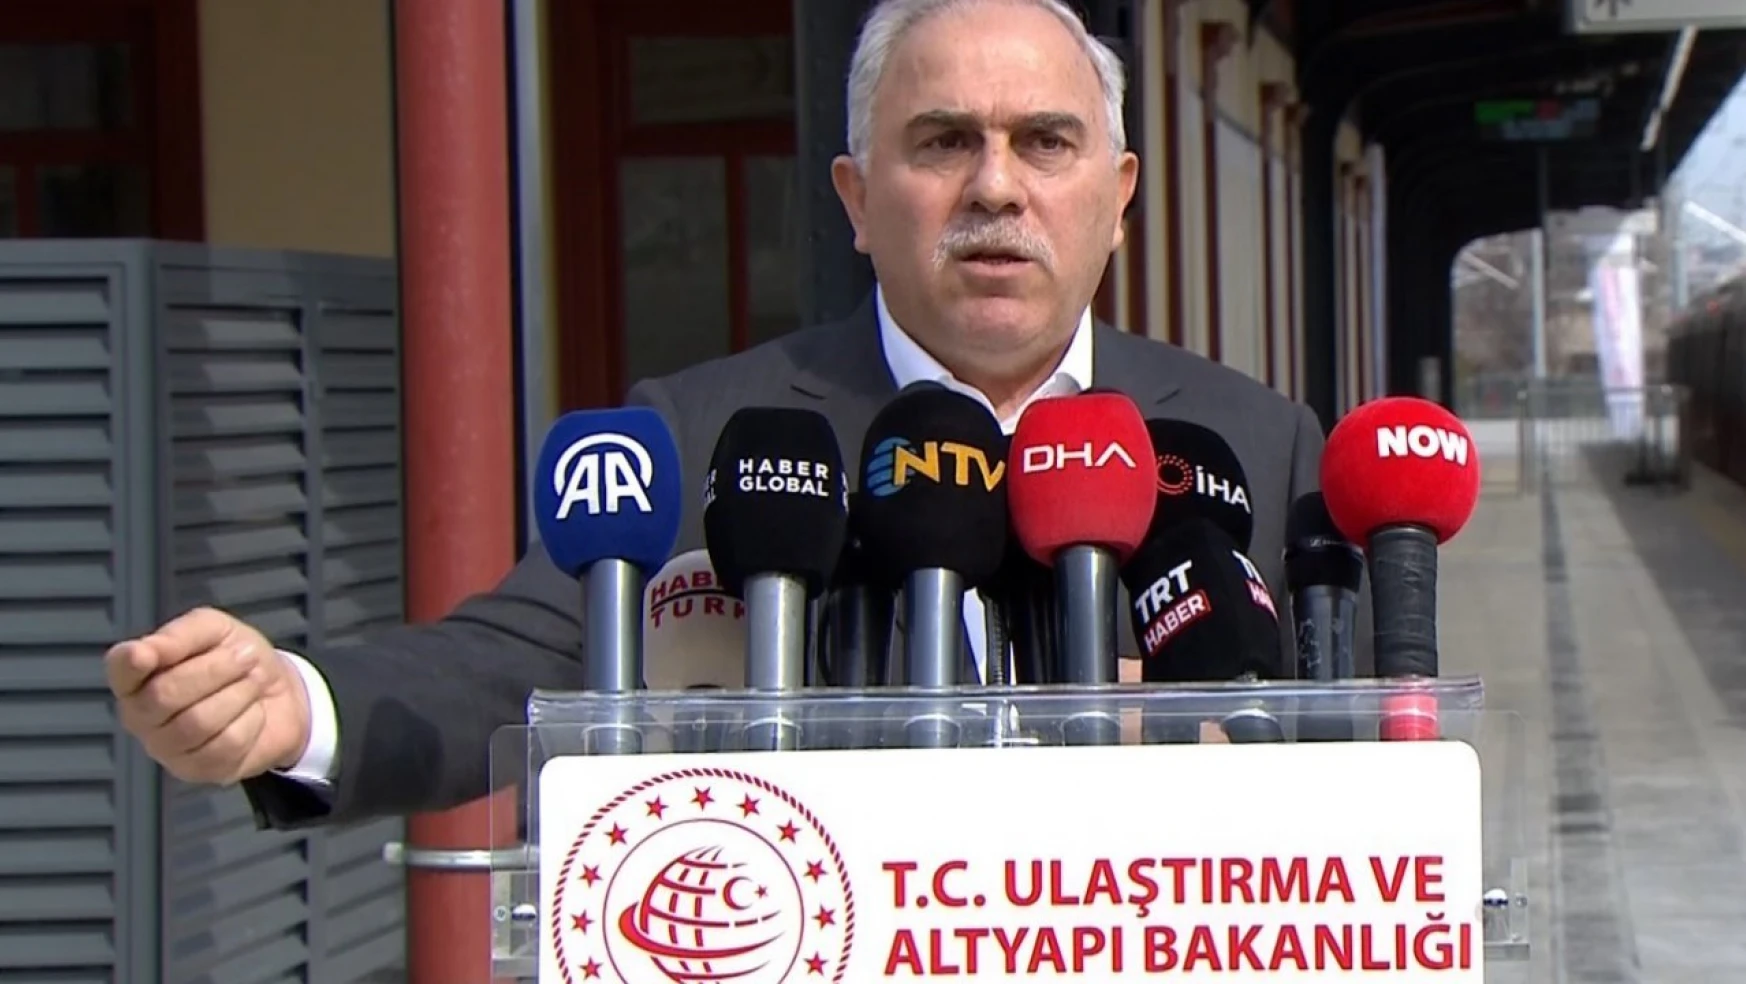 Fatih Belediye Başkanı Turan'dan 'davet' polemiği yorumu